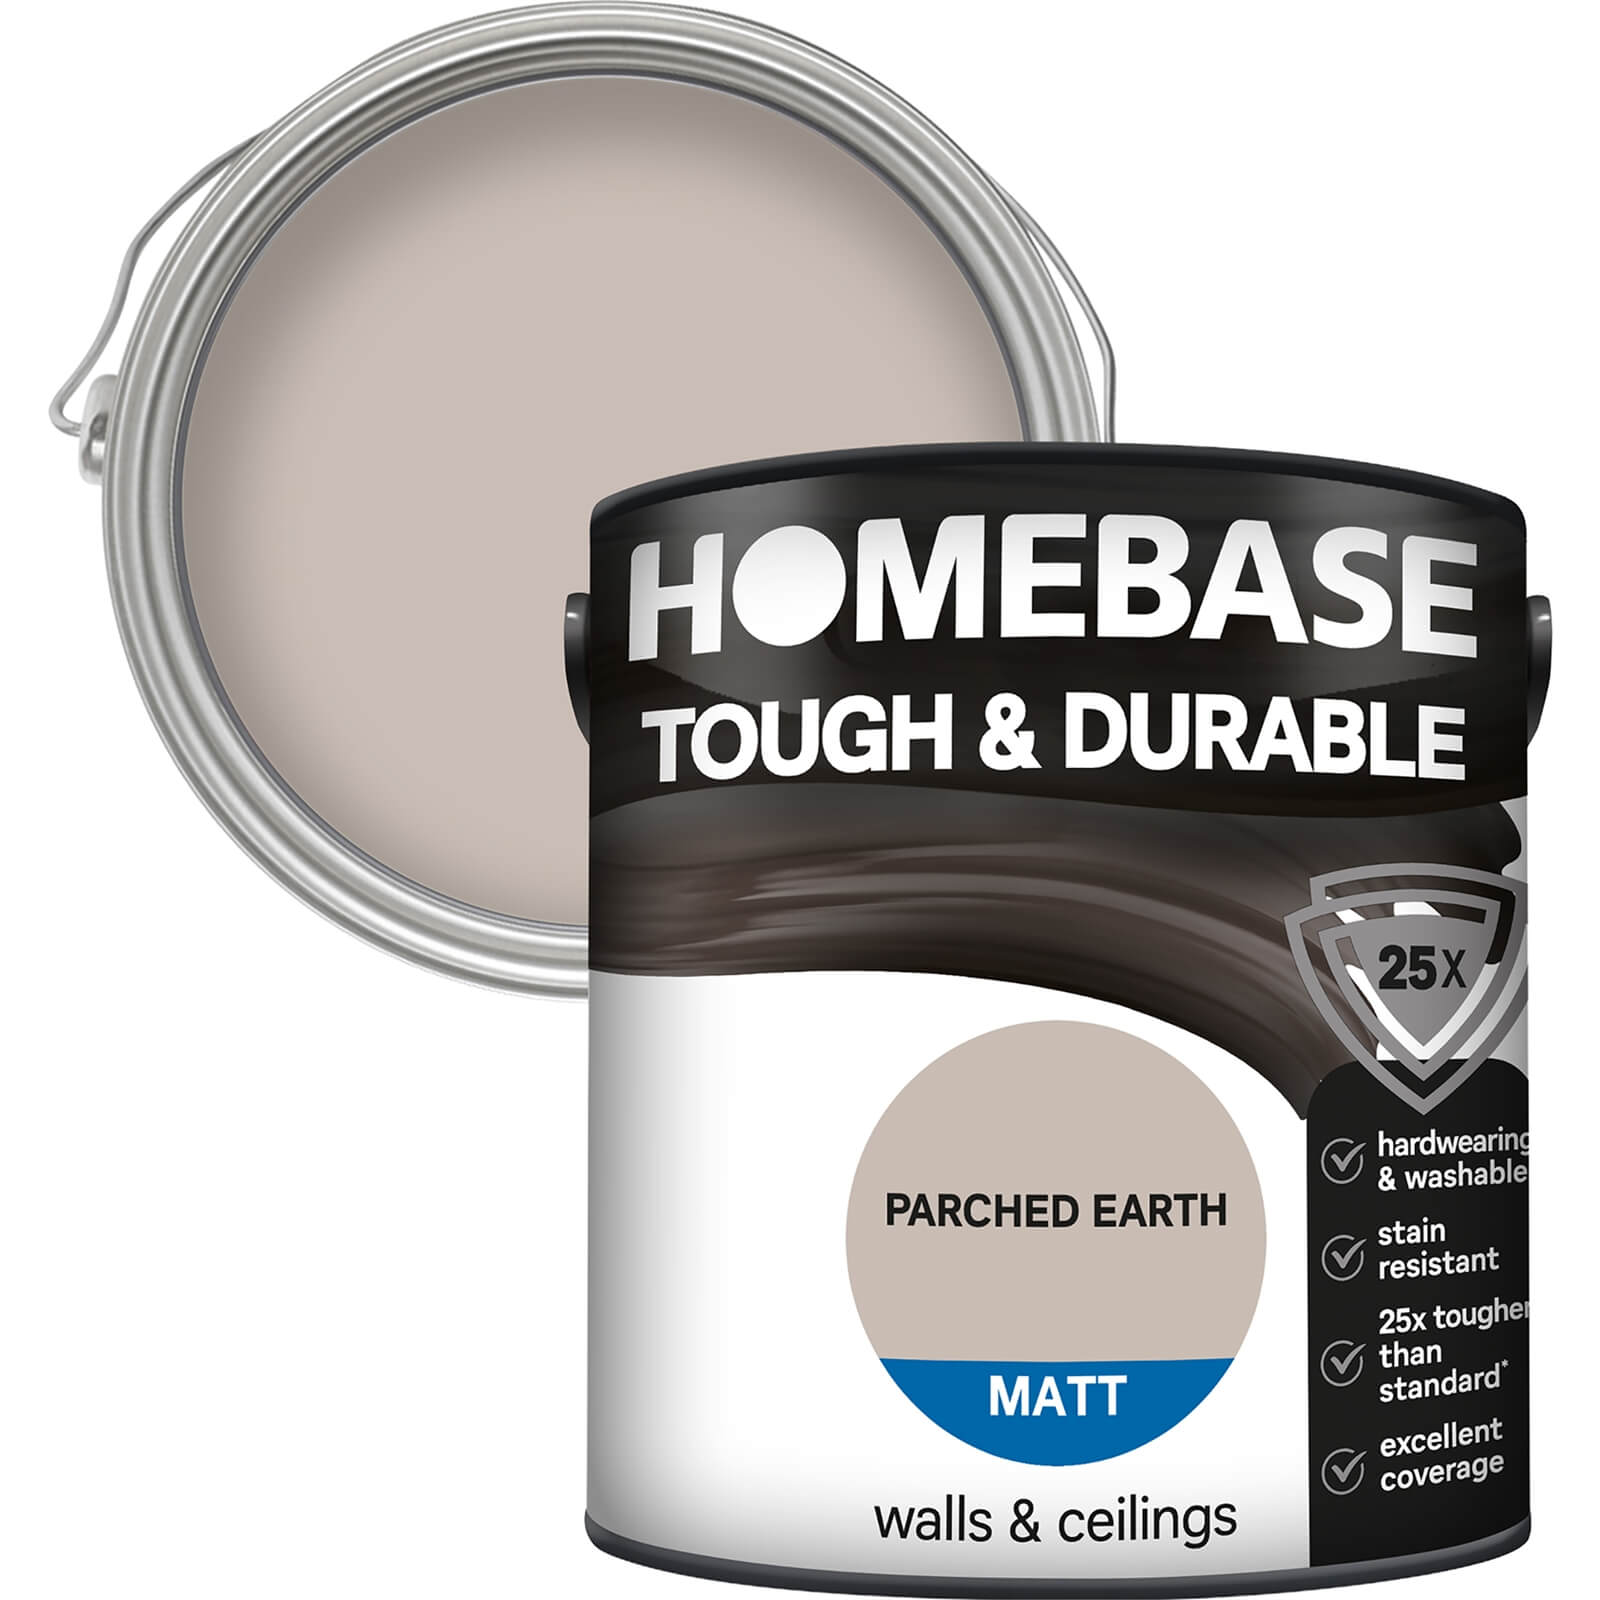 Homebase Tough & Durable Matt Paint Parched Earth - 2.5L